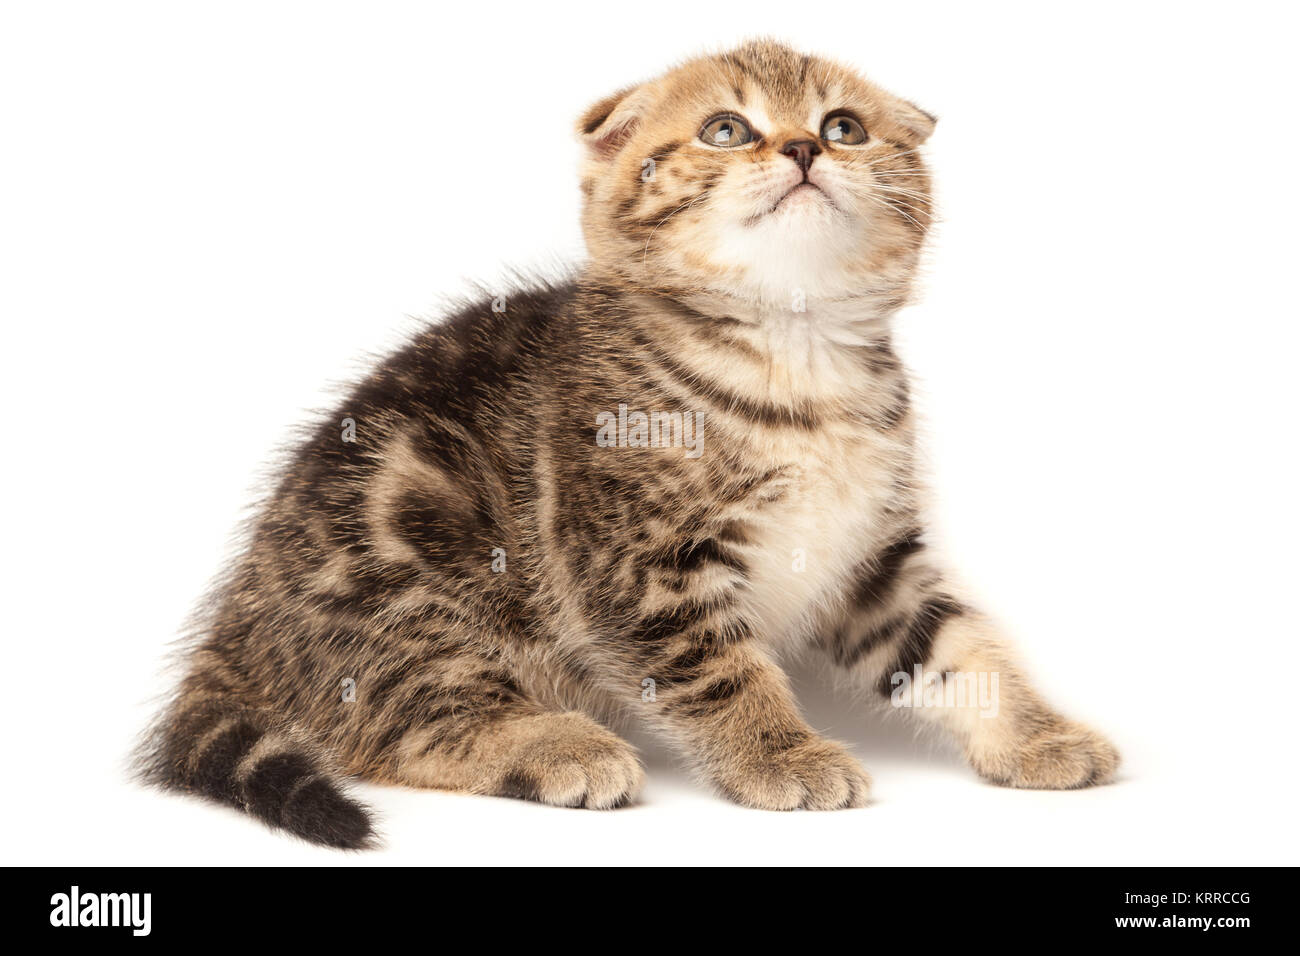 Portrait cat, scottish Fold on white background Stock Photo